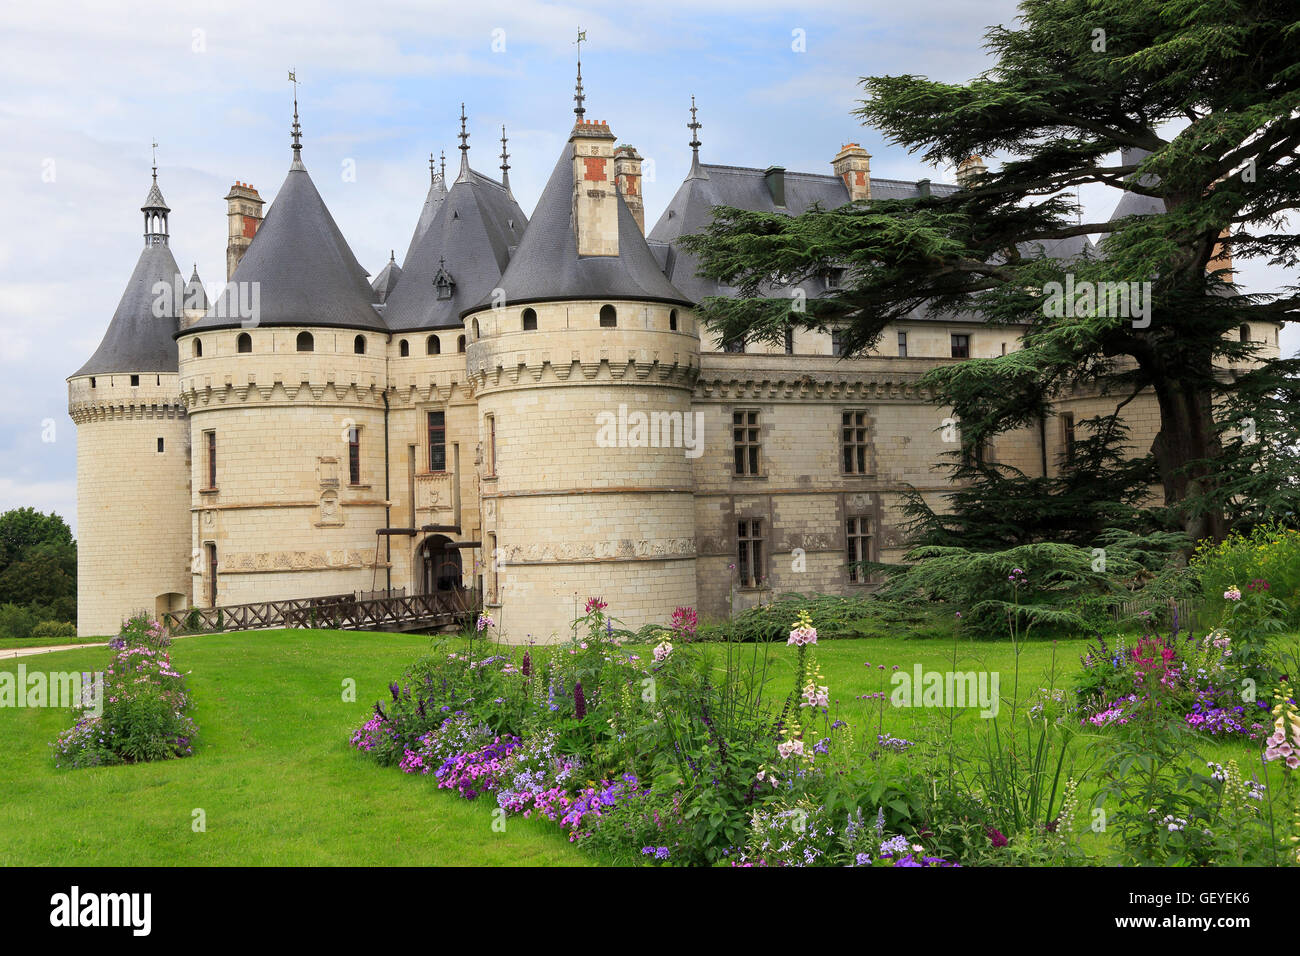 El Chateau de Chaumont es un castillo de Chaumont-sur-Loire, Loir-et-Cher, Francia. Foto de stock